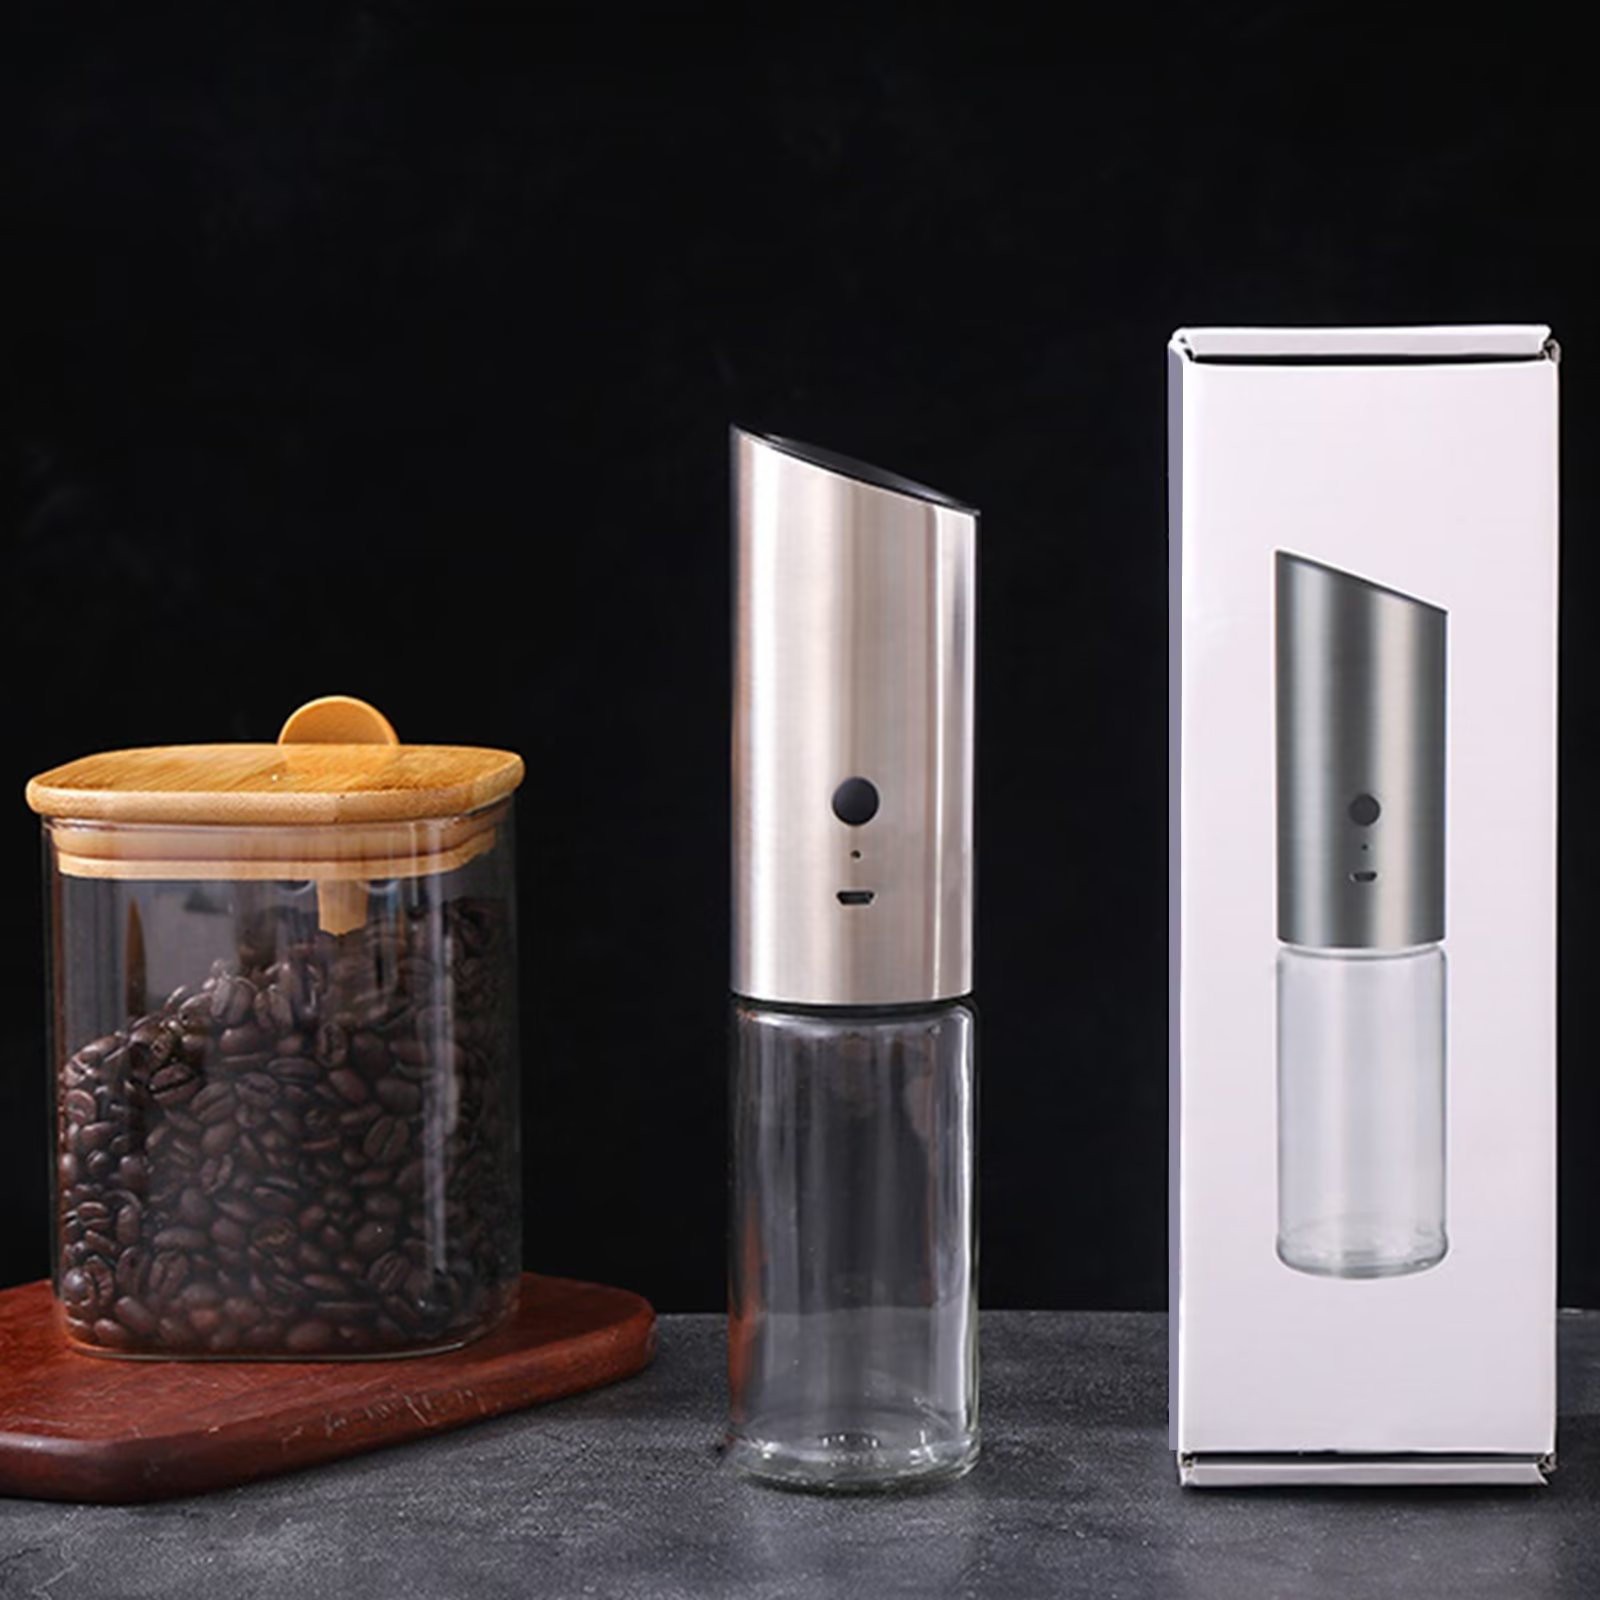 https://assets.wfcdn.com/im/61220907/compr-r85/2141/214109615/usb-rechargeable-electric-salt-pepper-grinder-mill-set-stainless-steel-gravity-sensor-pepper-grinder.jpg